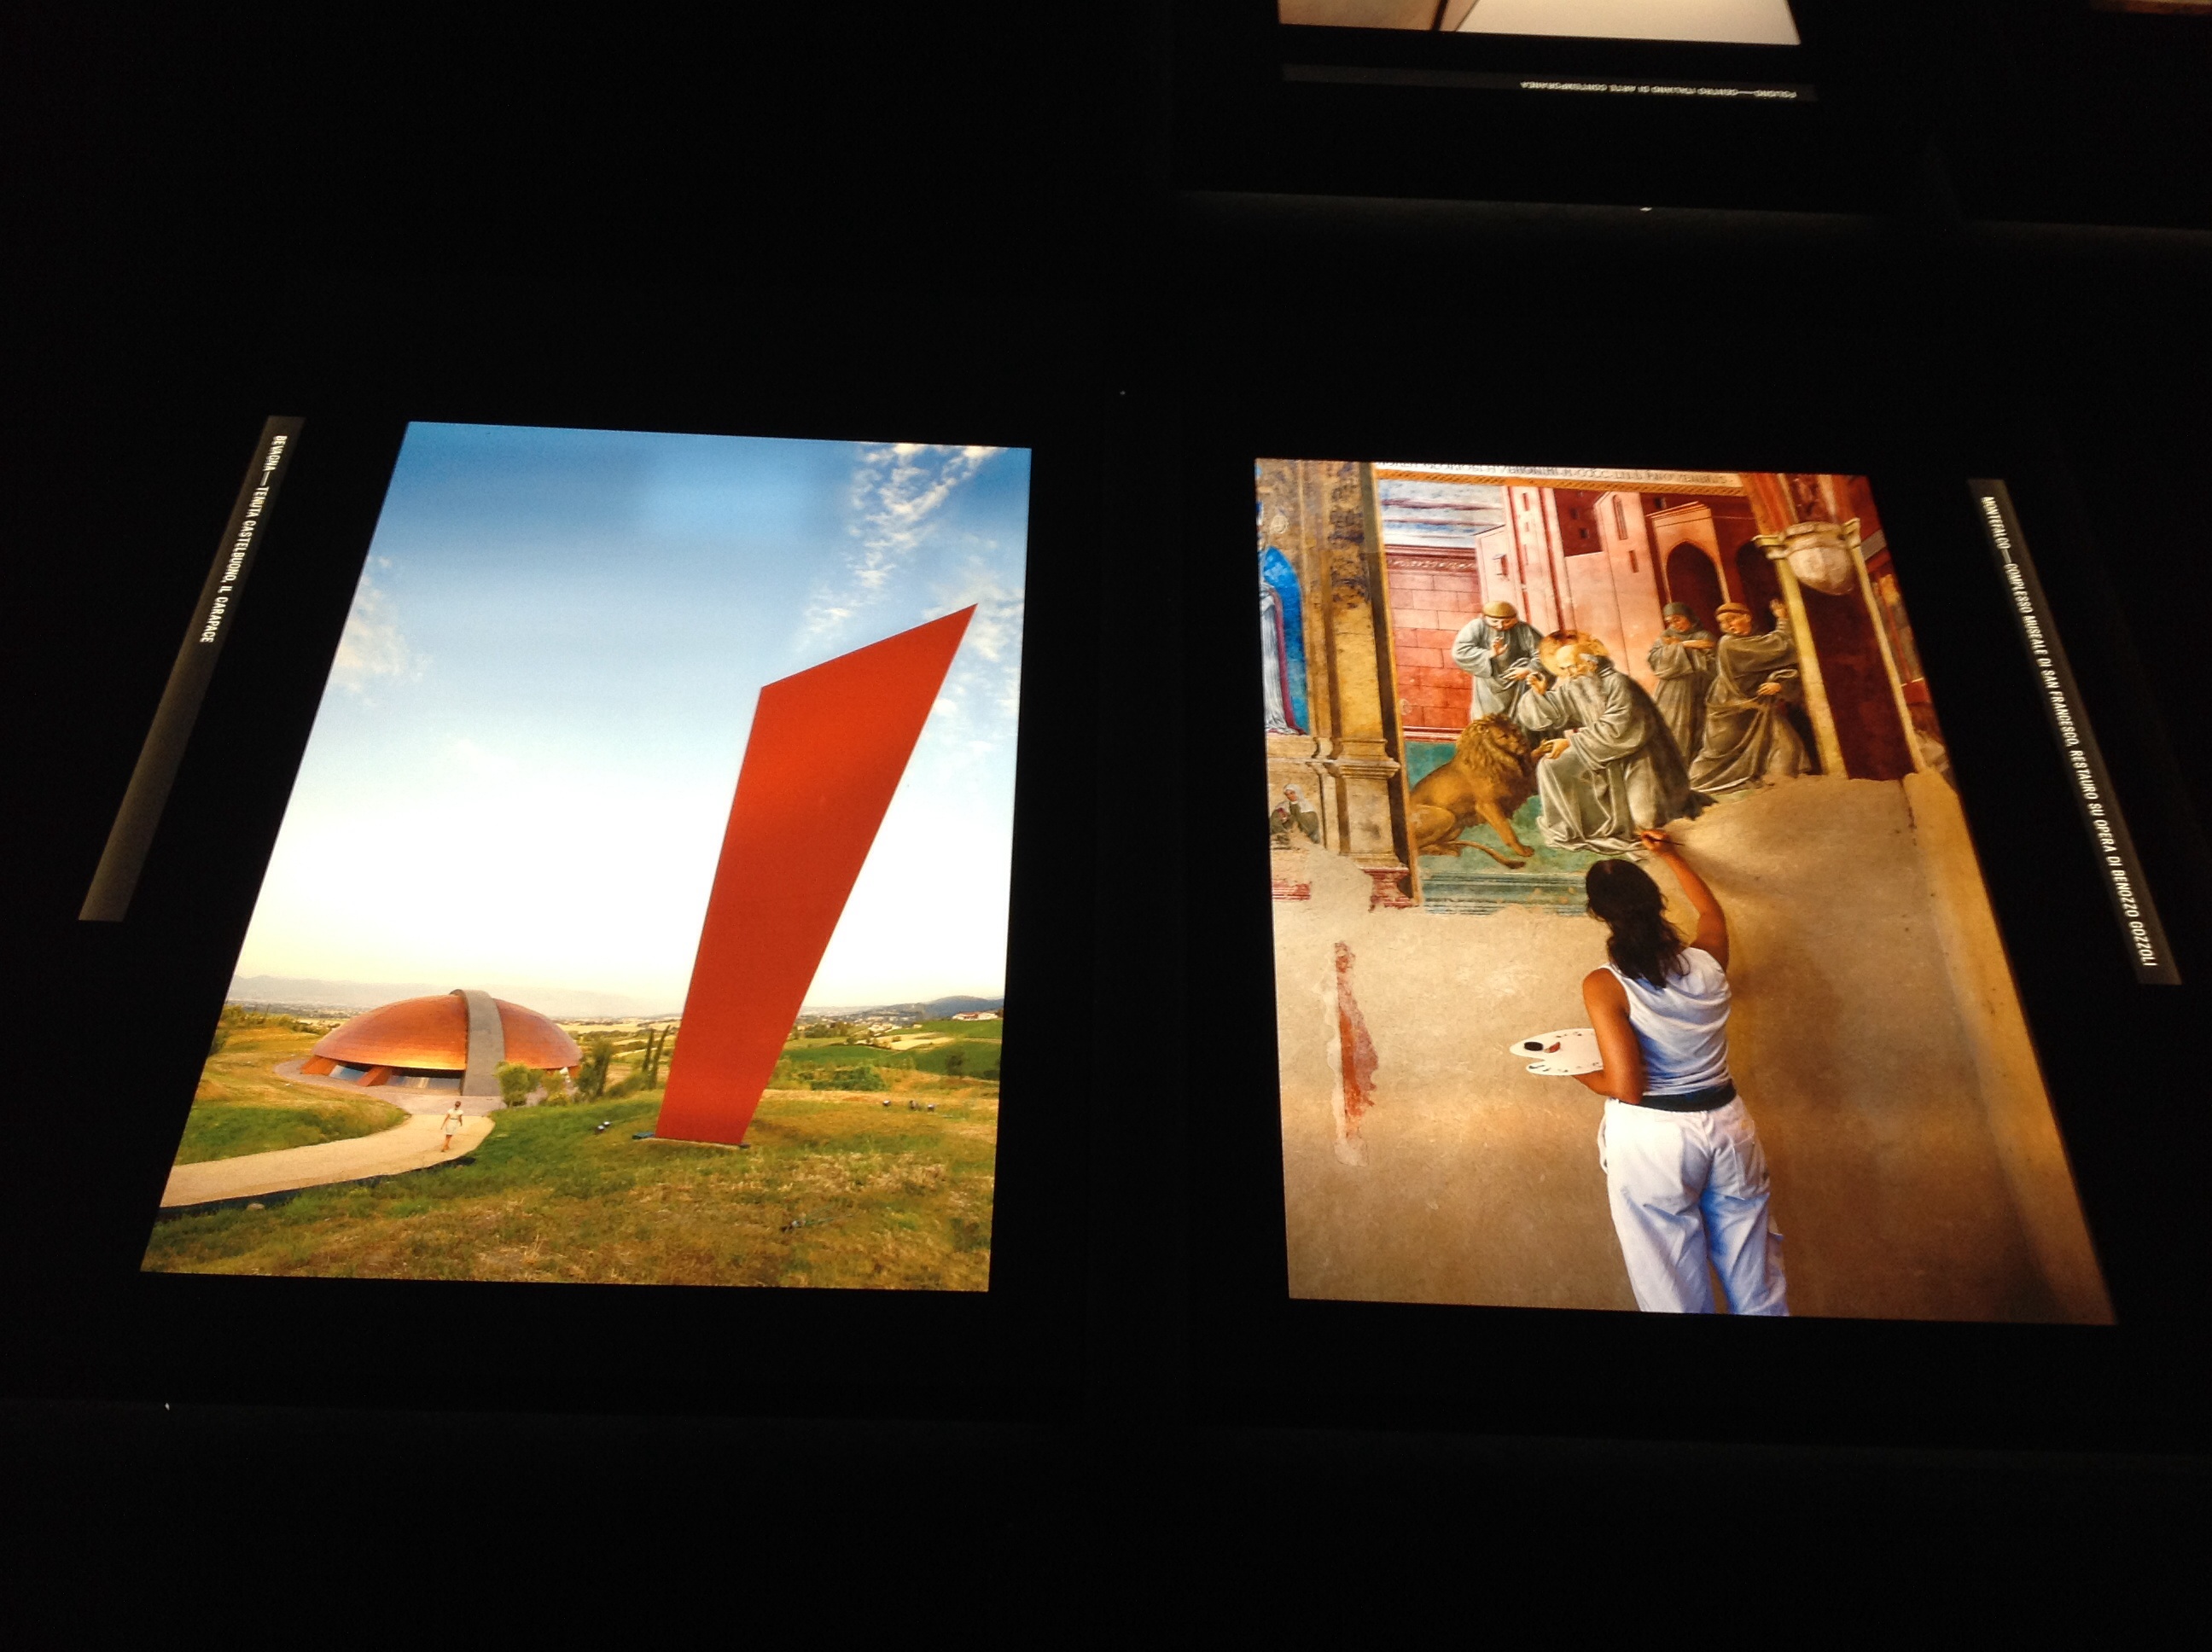 Istallazione mostra Sensational Umbria di Steve McCurry, Ex Ospedale FatebeneFratelli, Perugia